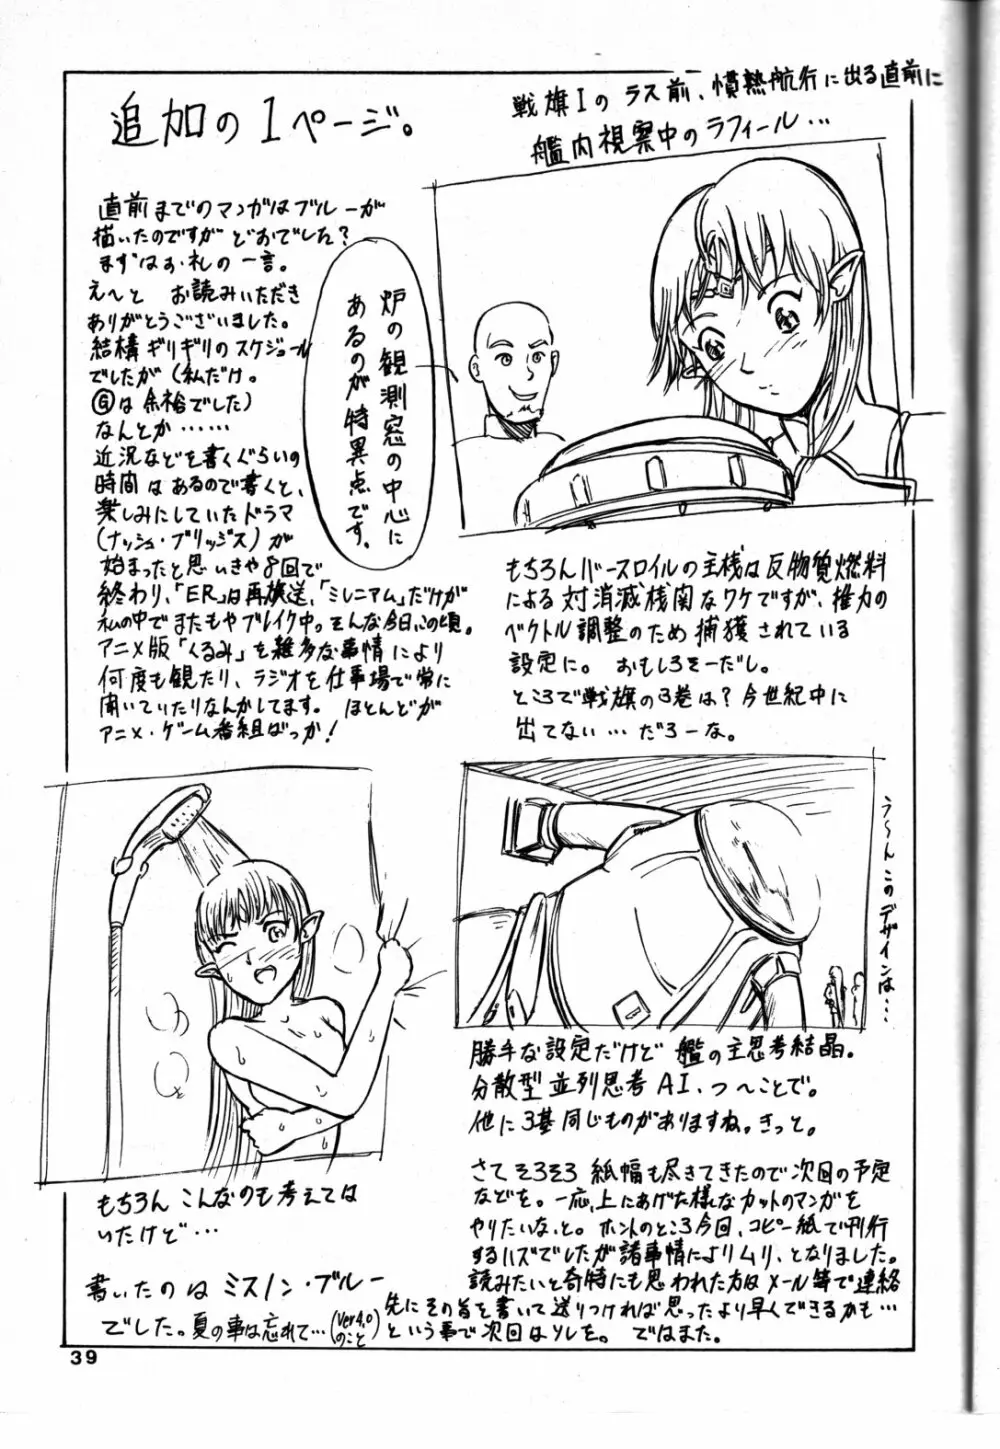 追放覚悟 Ver 4.0 - page39